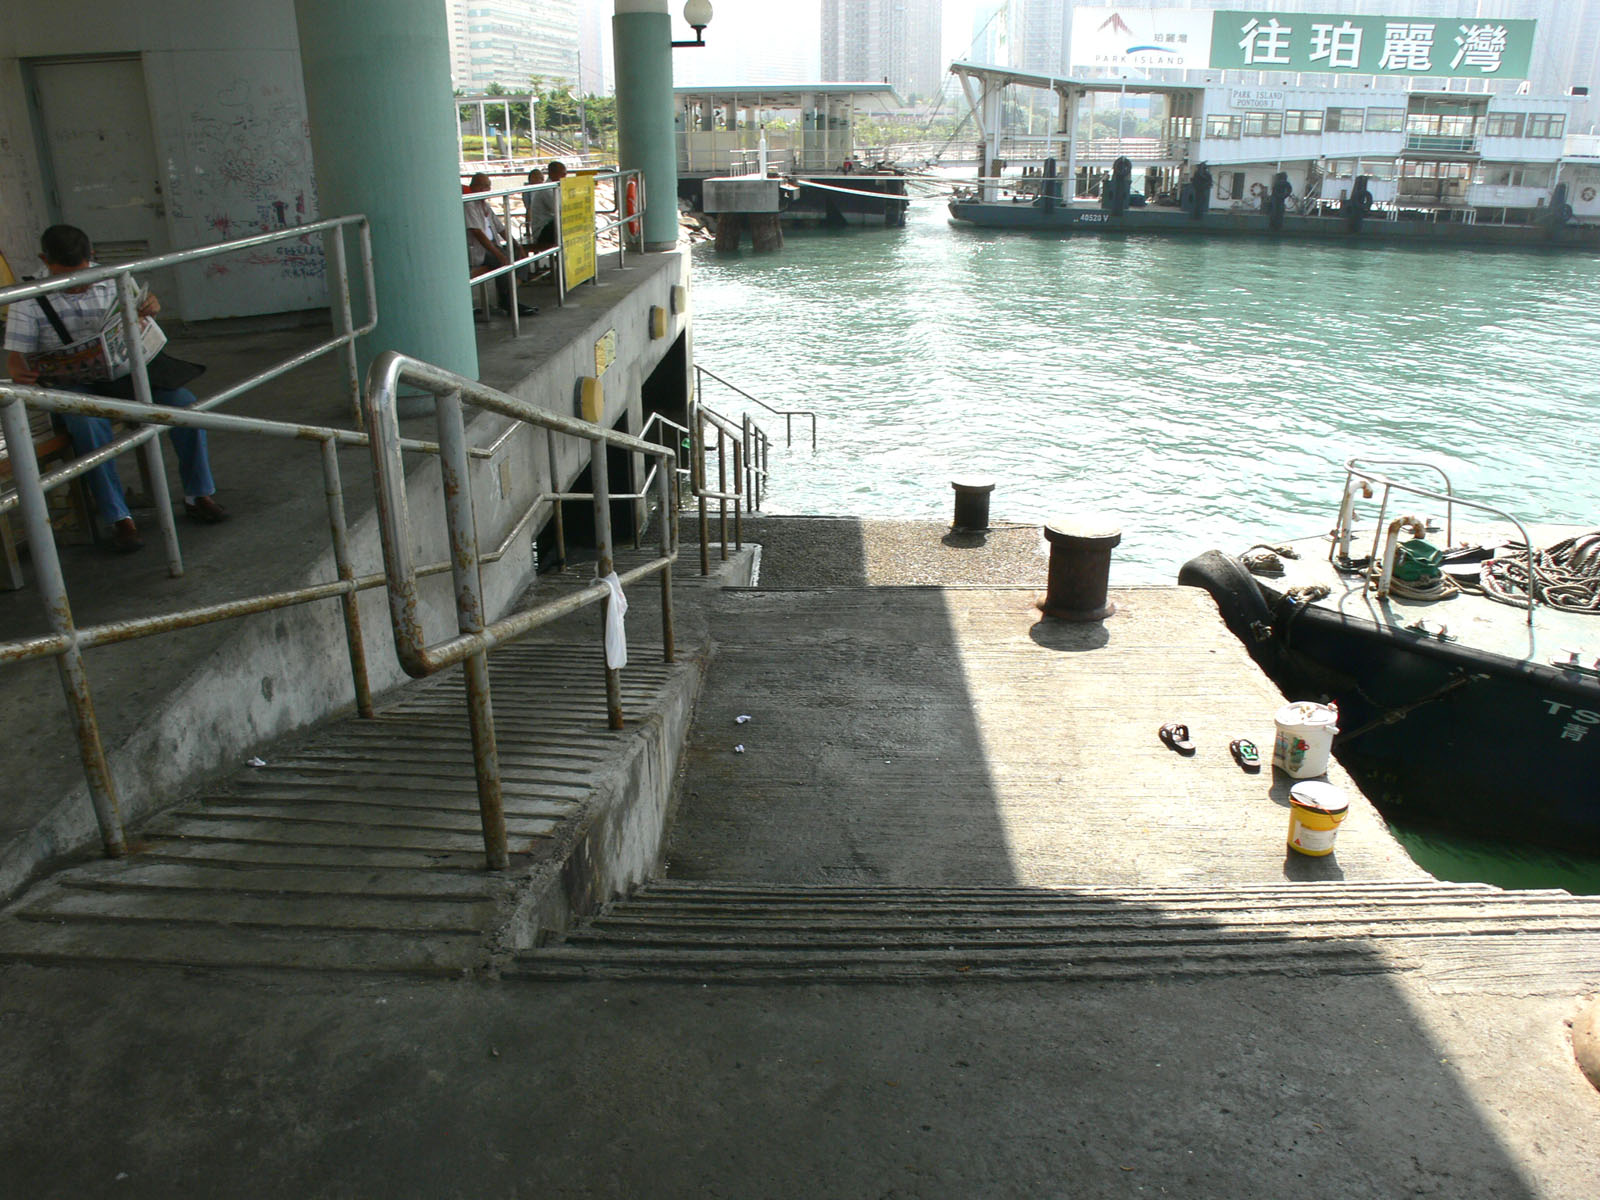 相片 2: 荃灣公眾碼頭